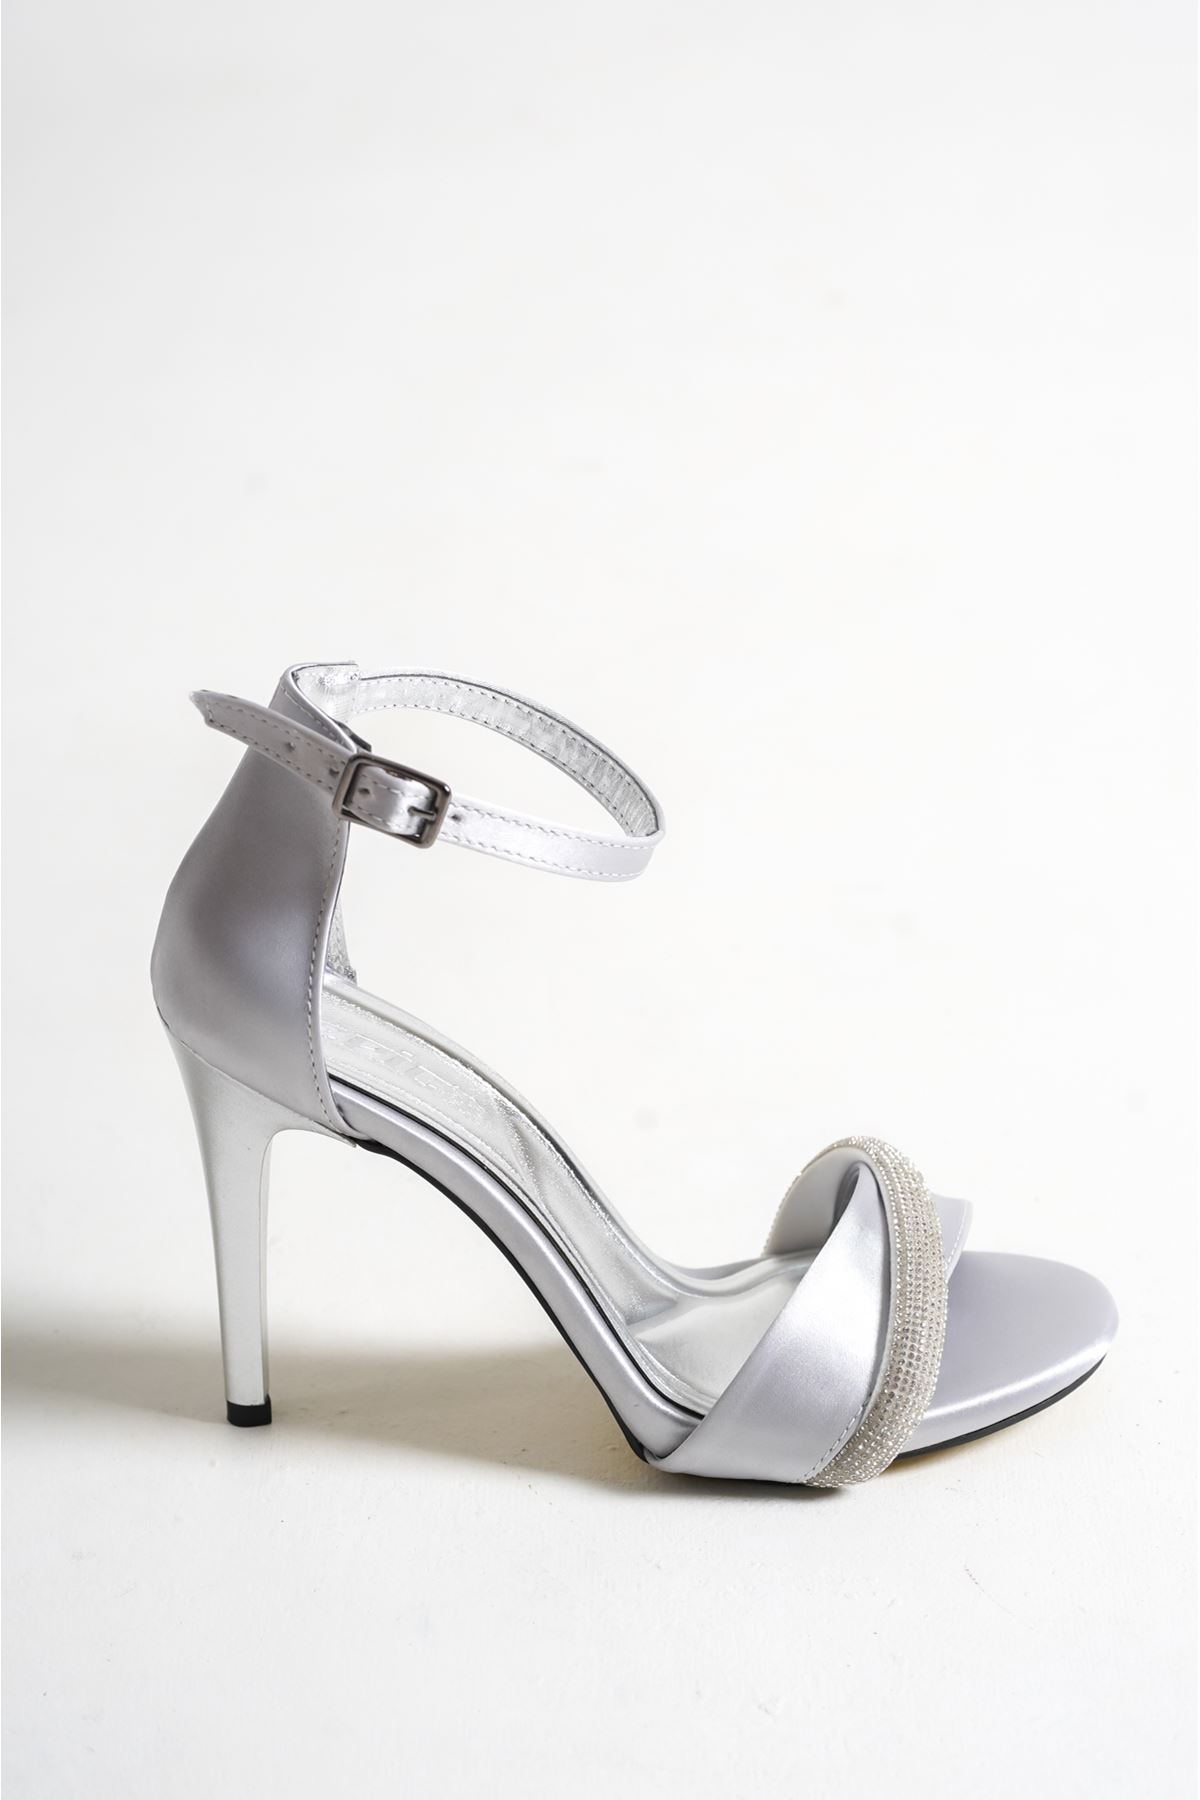 Carlos Gümüş Saten Taşlı Yüksek Topuklu Kadın Ayakkabı